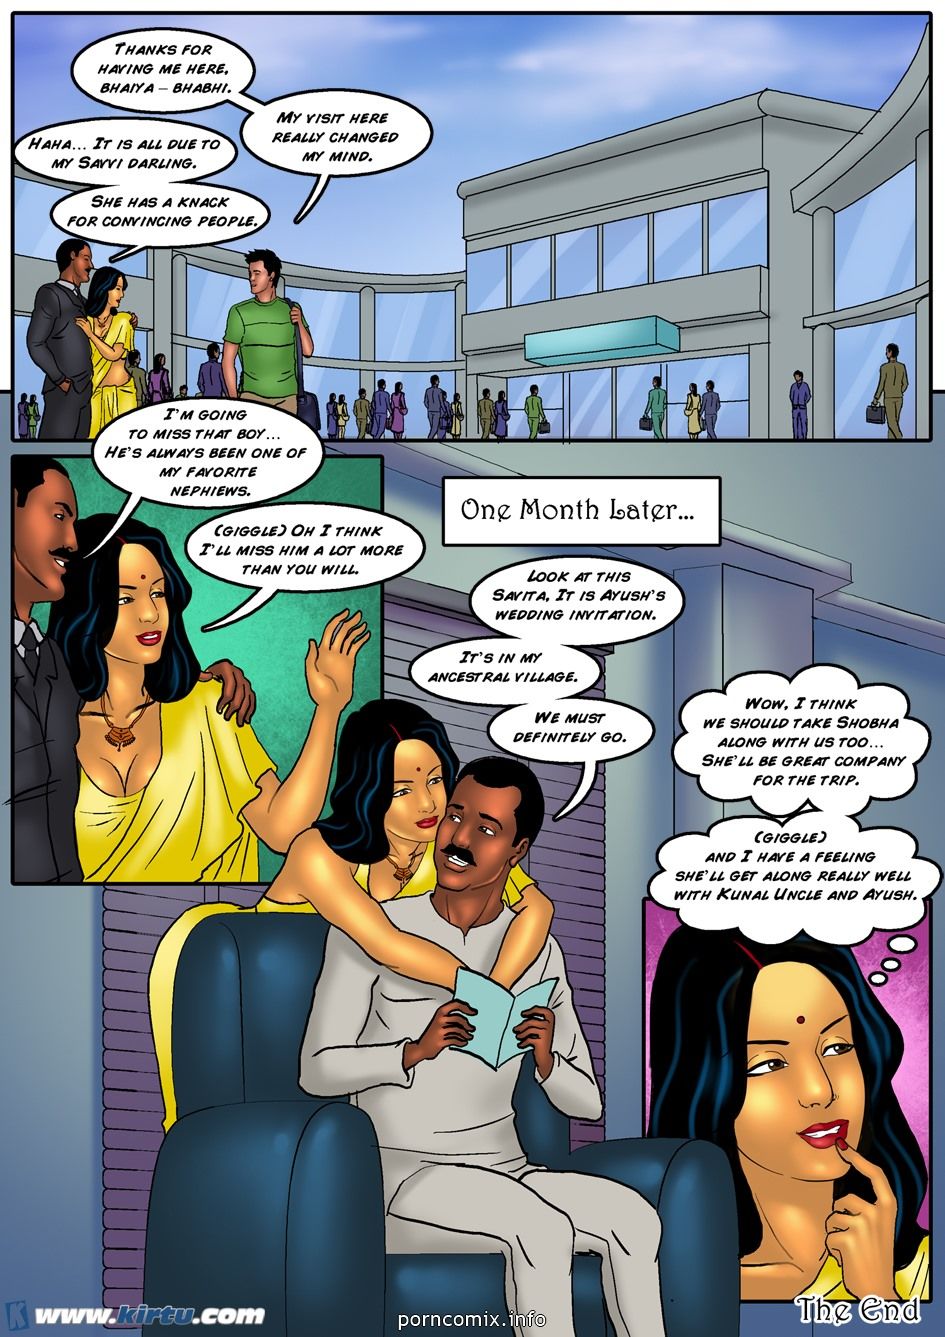 سافيتا bhabhi الحلقة 35: على مثالية الهندي العروس